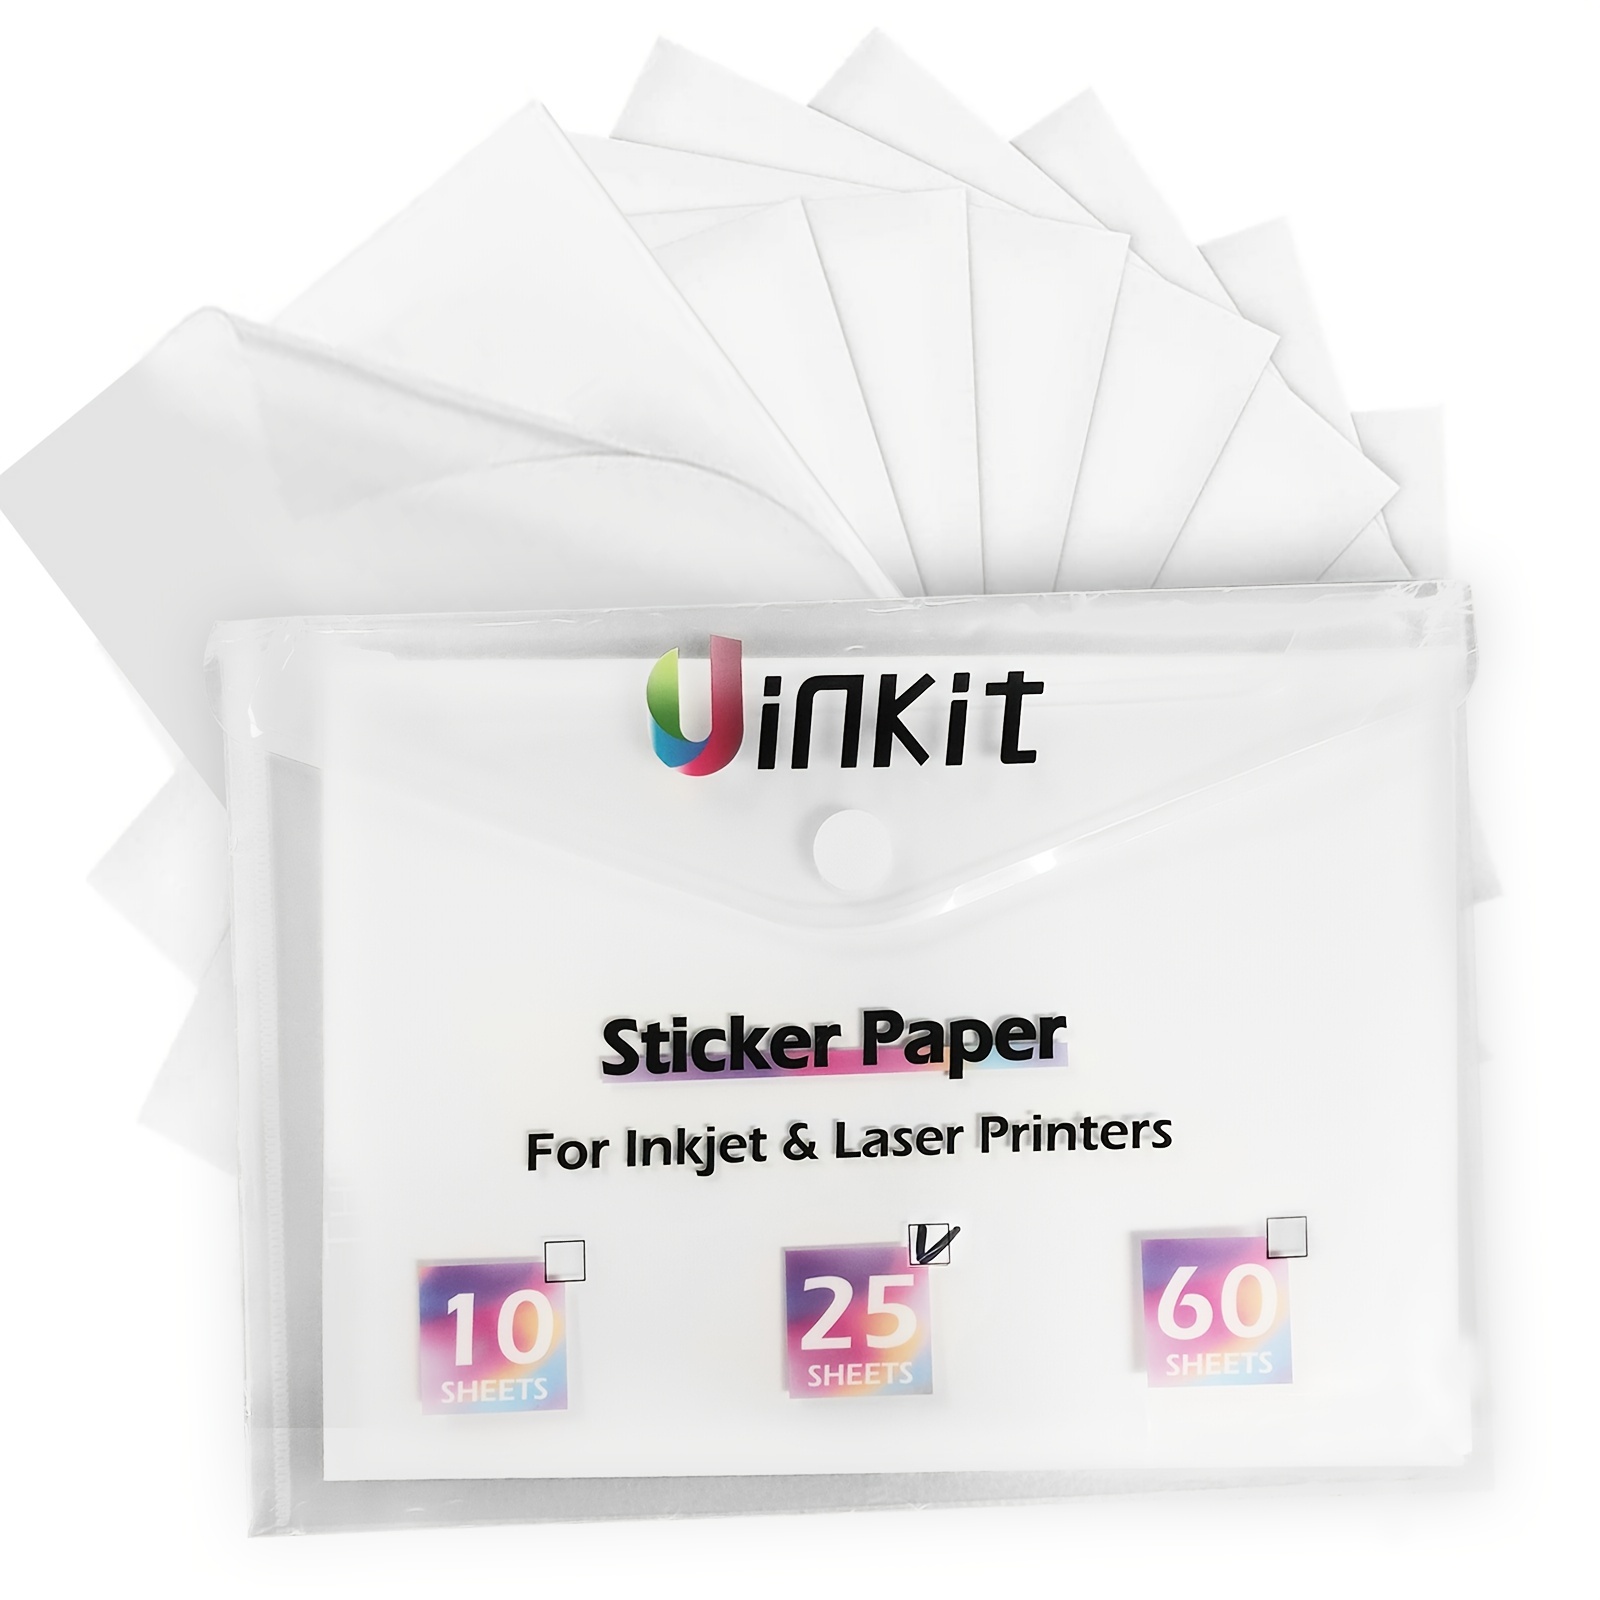  Printable Vinyl Sticker Paper for Laser Printer